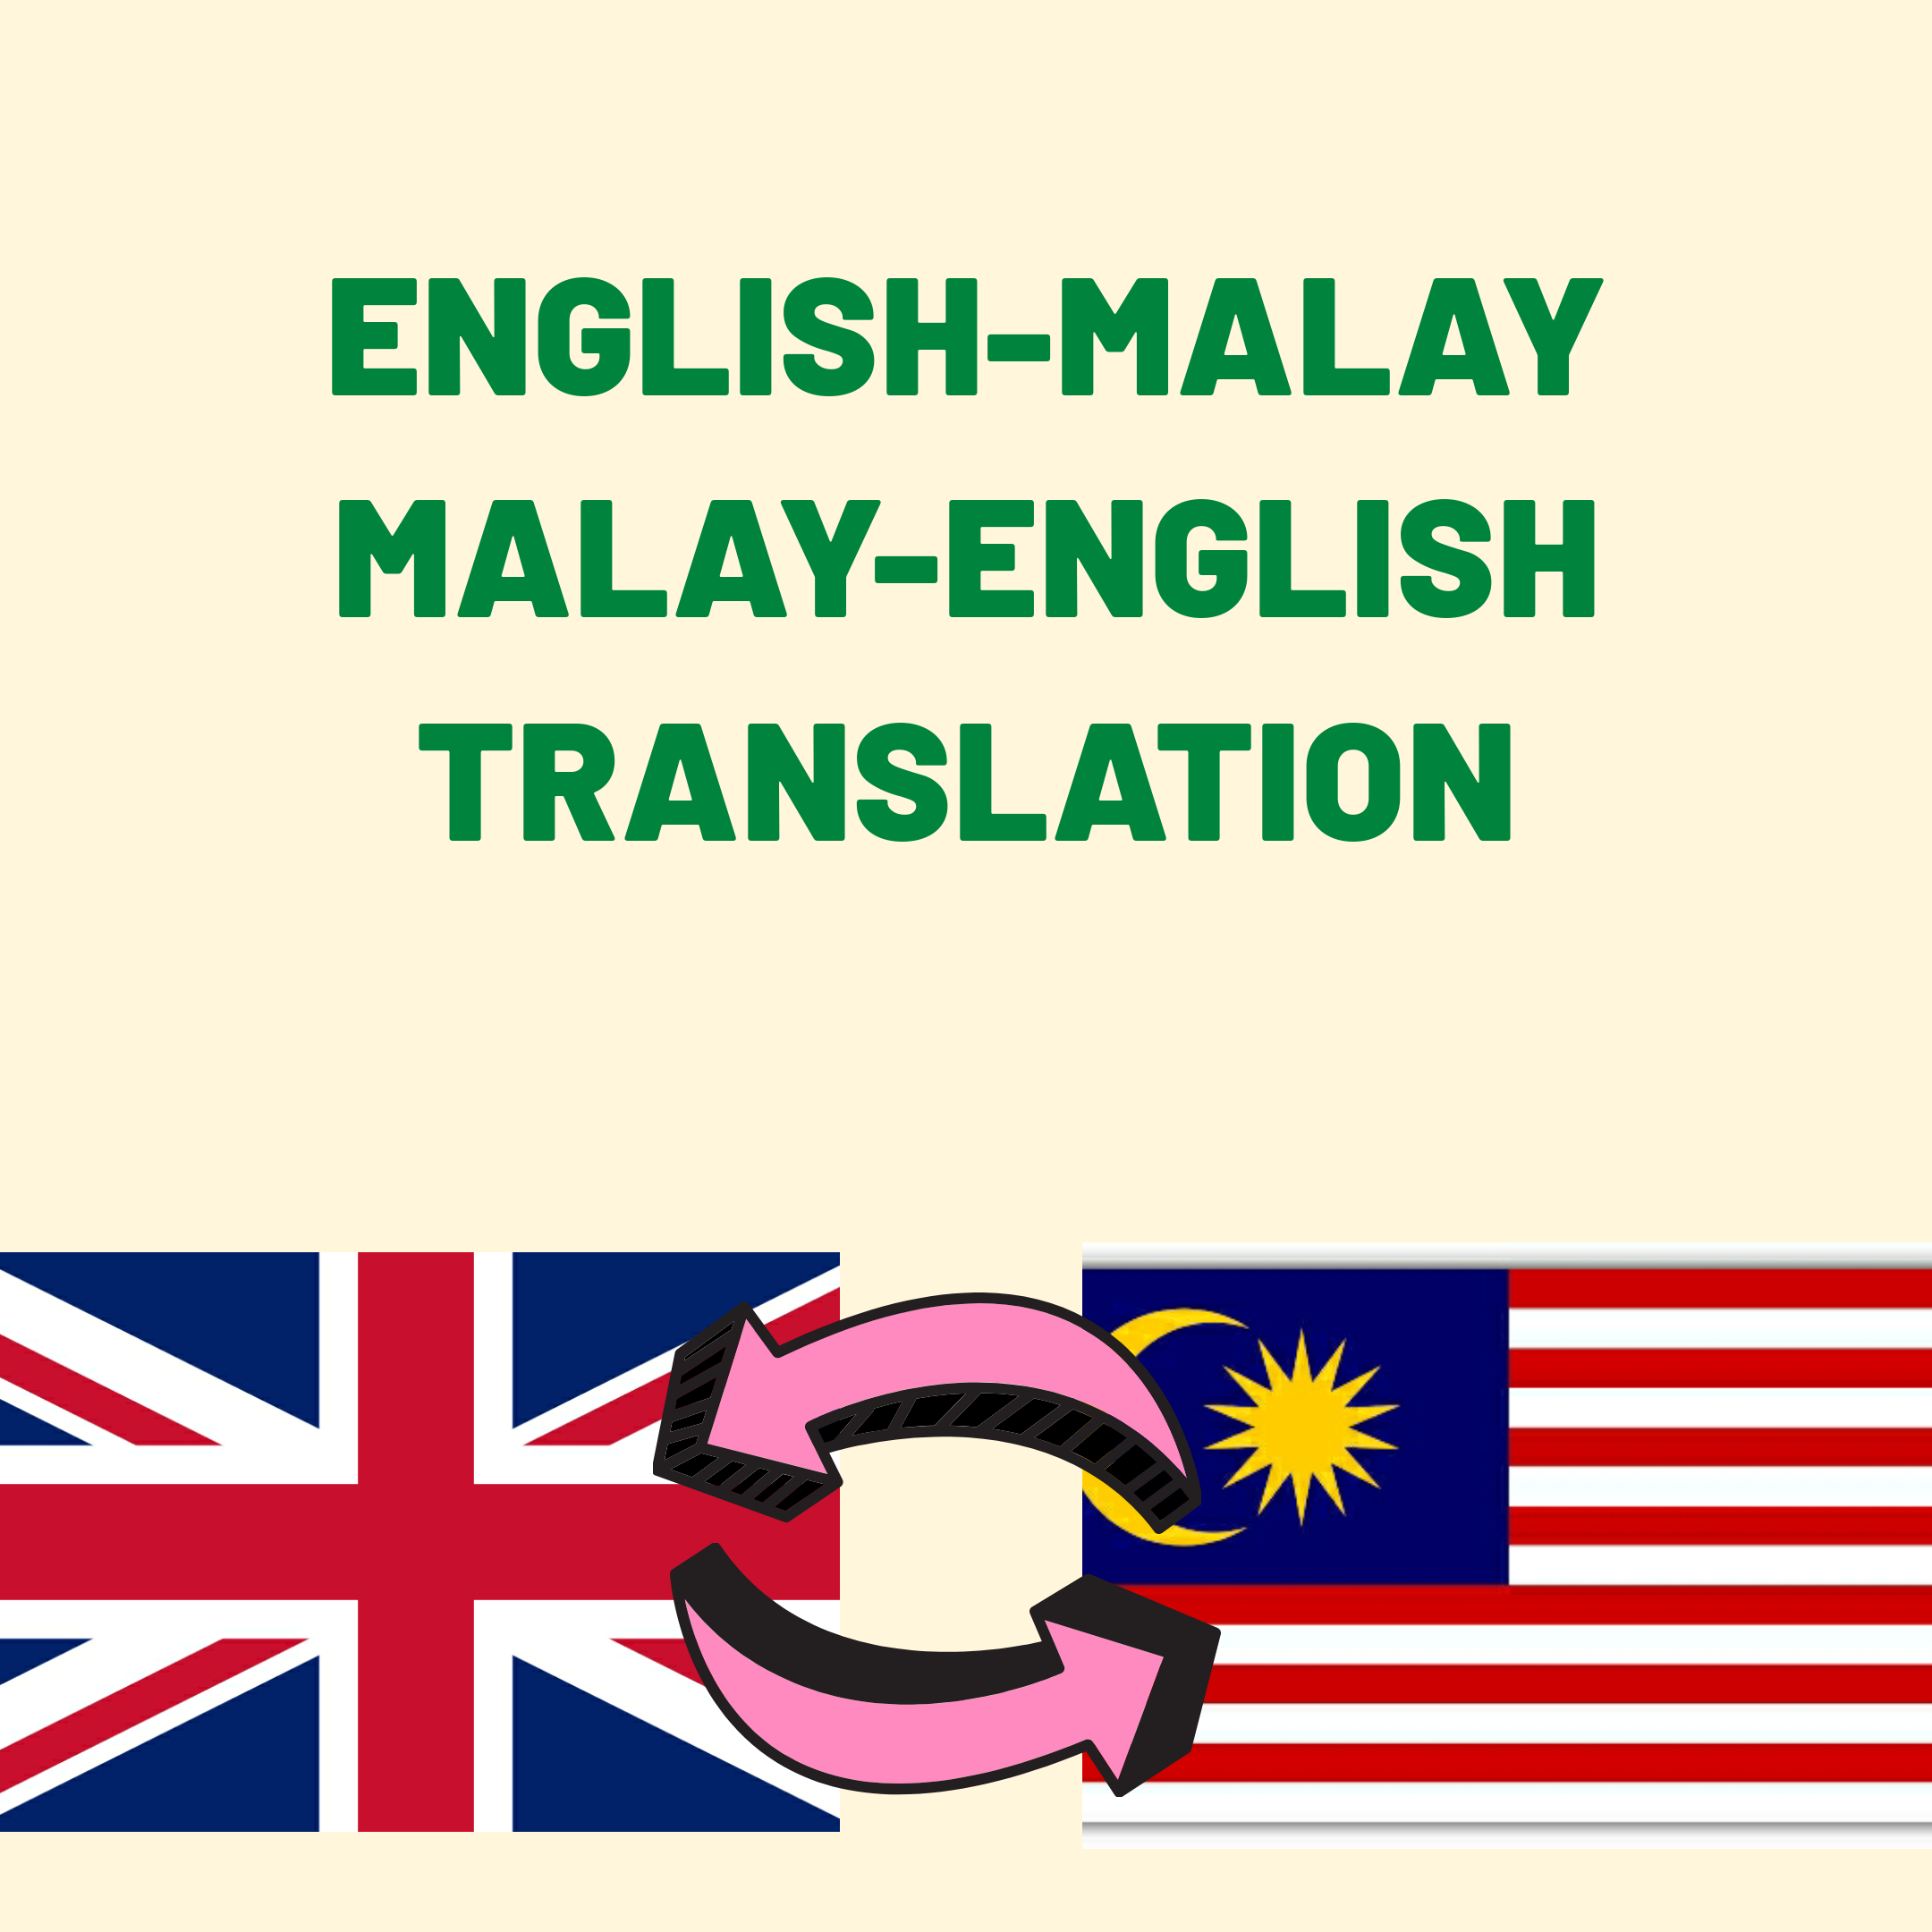 To english malay translate Malay to